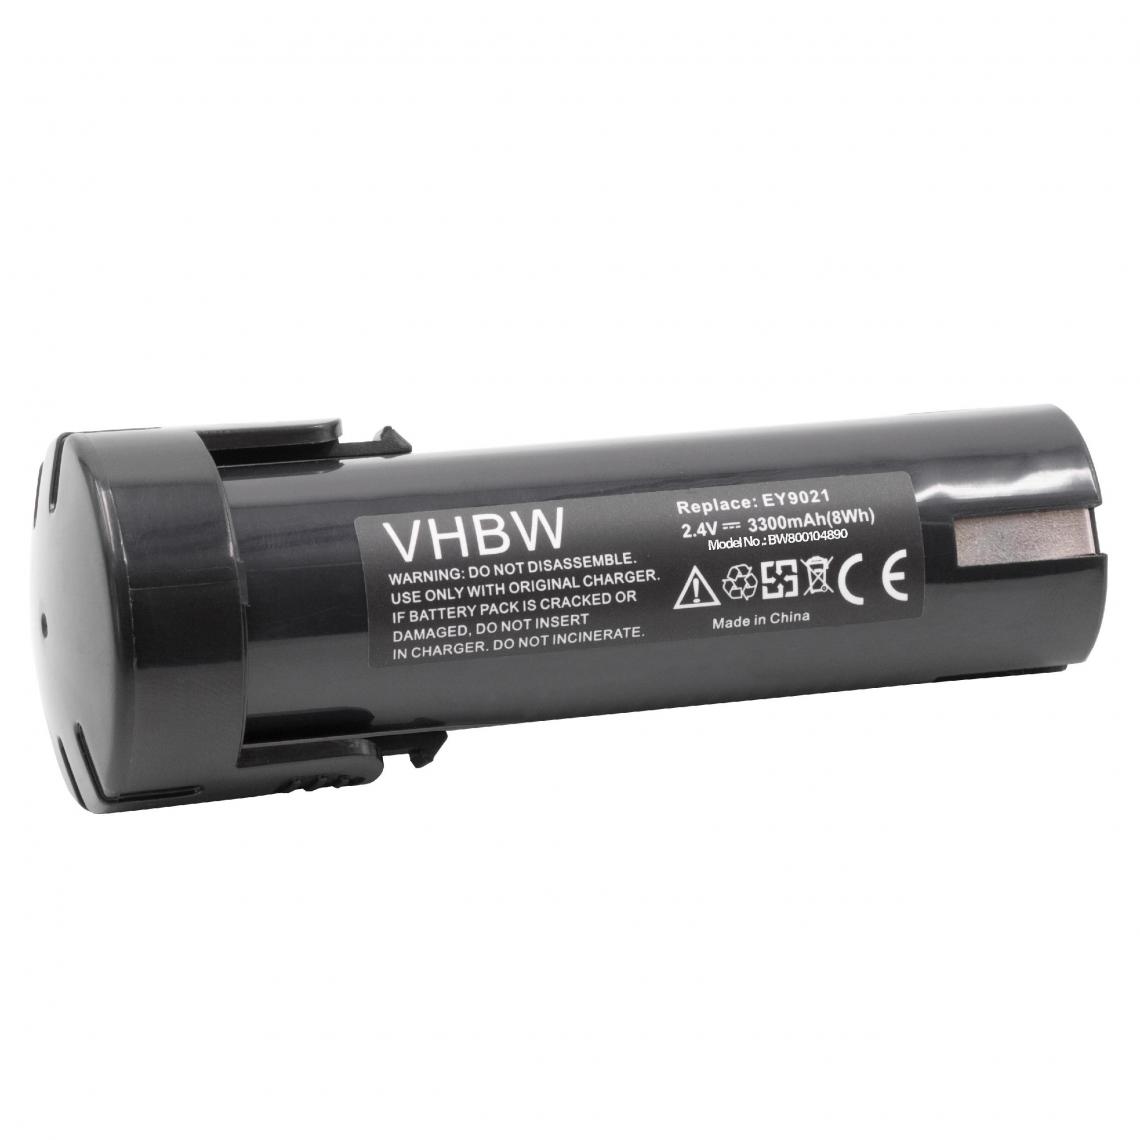 Vhbw - vhbw Batterie compatible avec National 6550-20, EY3652, EY3652DA, EY3652DR, EY503B outil électrique (3300 mAh, NiMH, 2,4 V) - Accessoires vissage, perçage